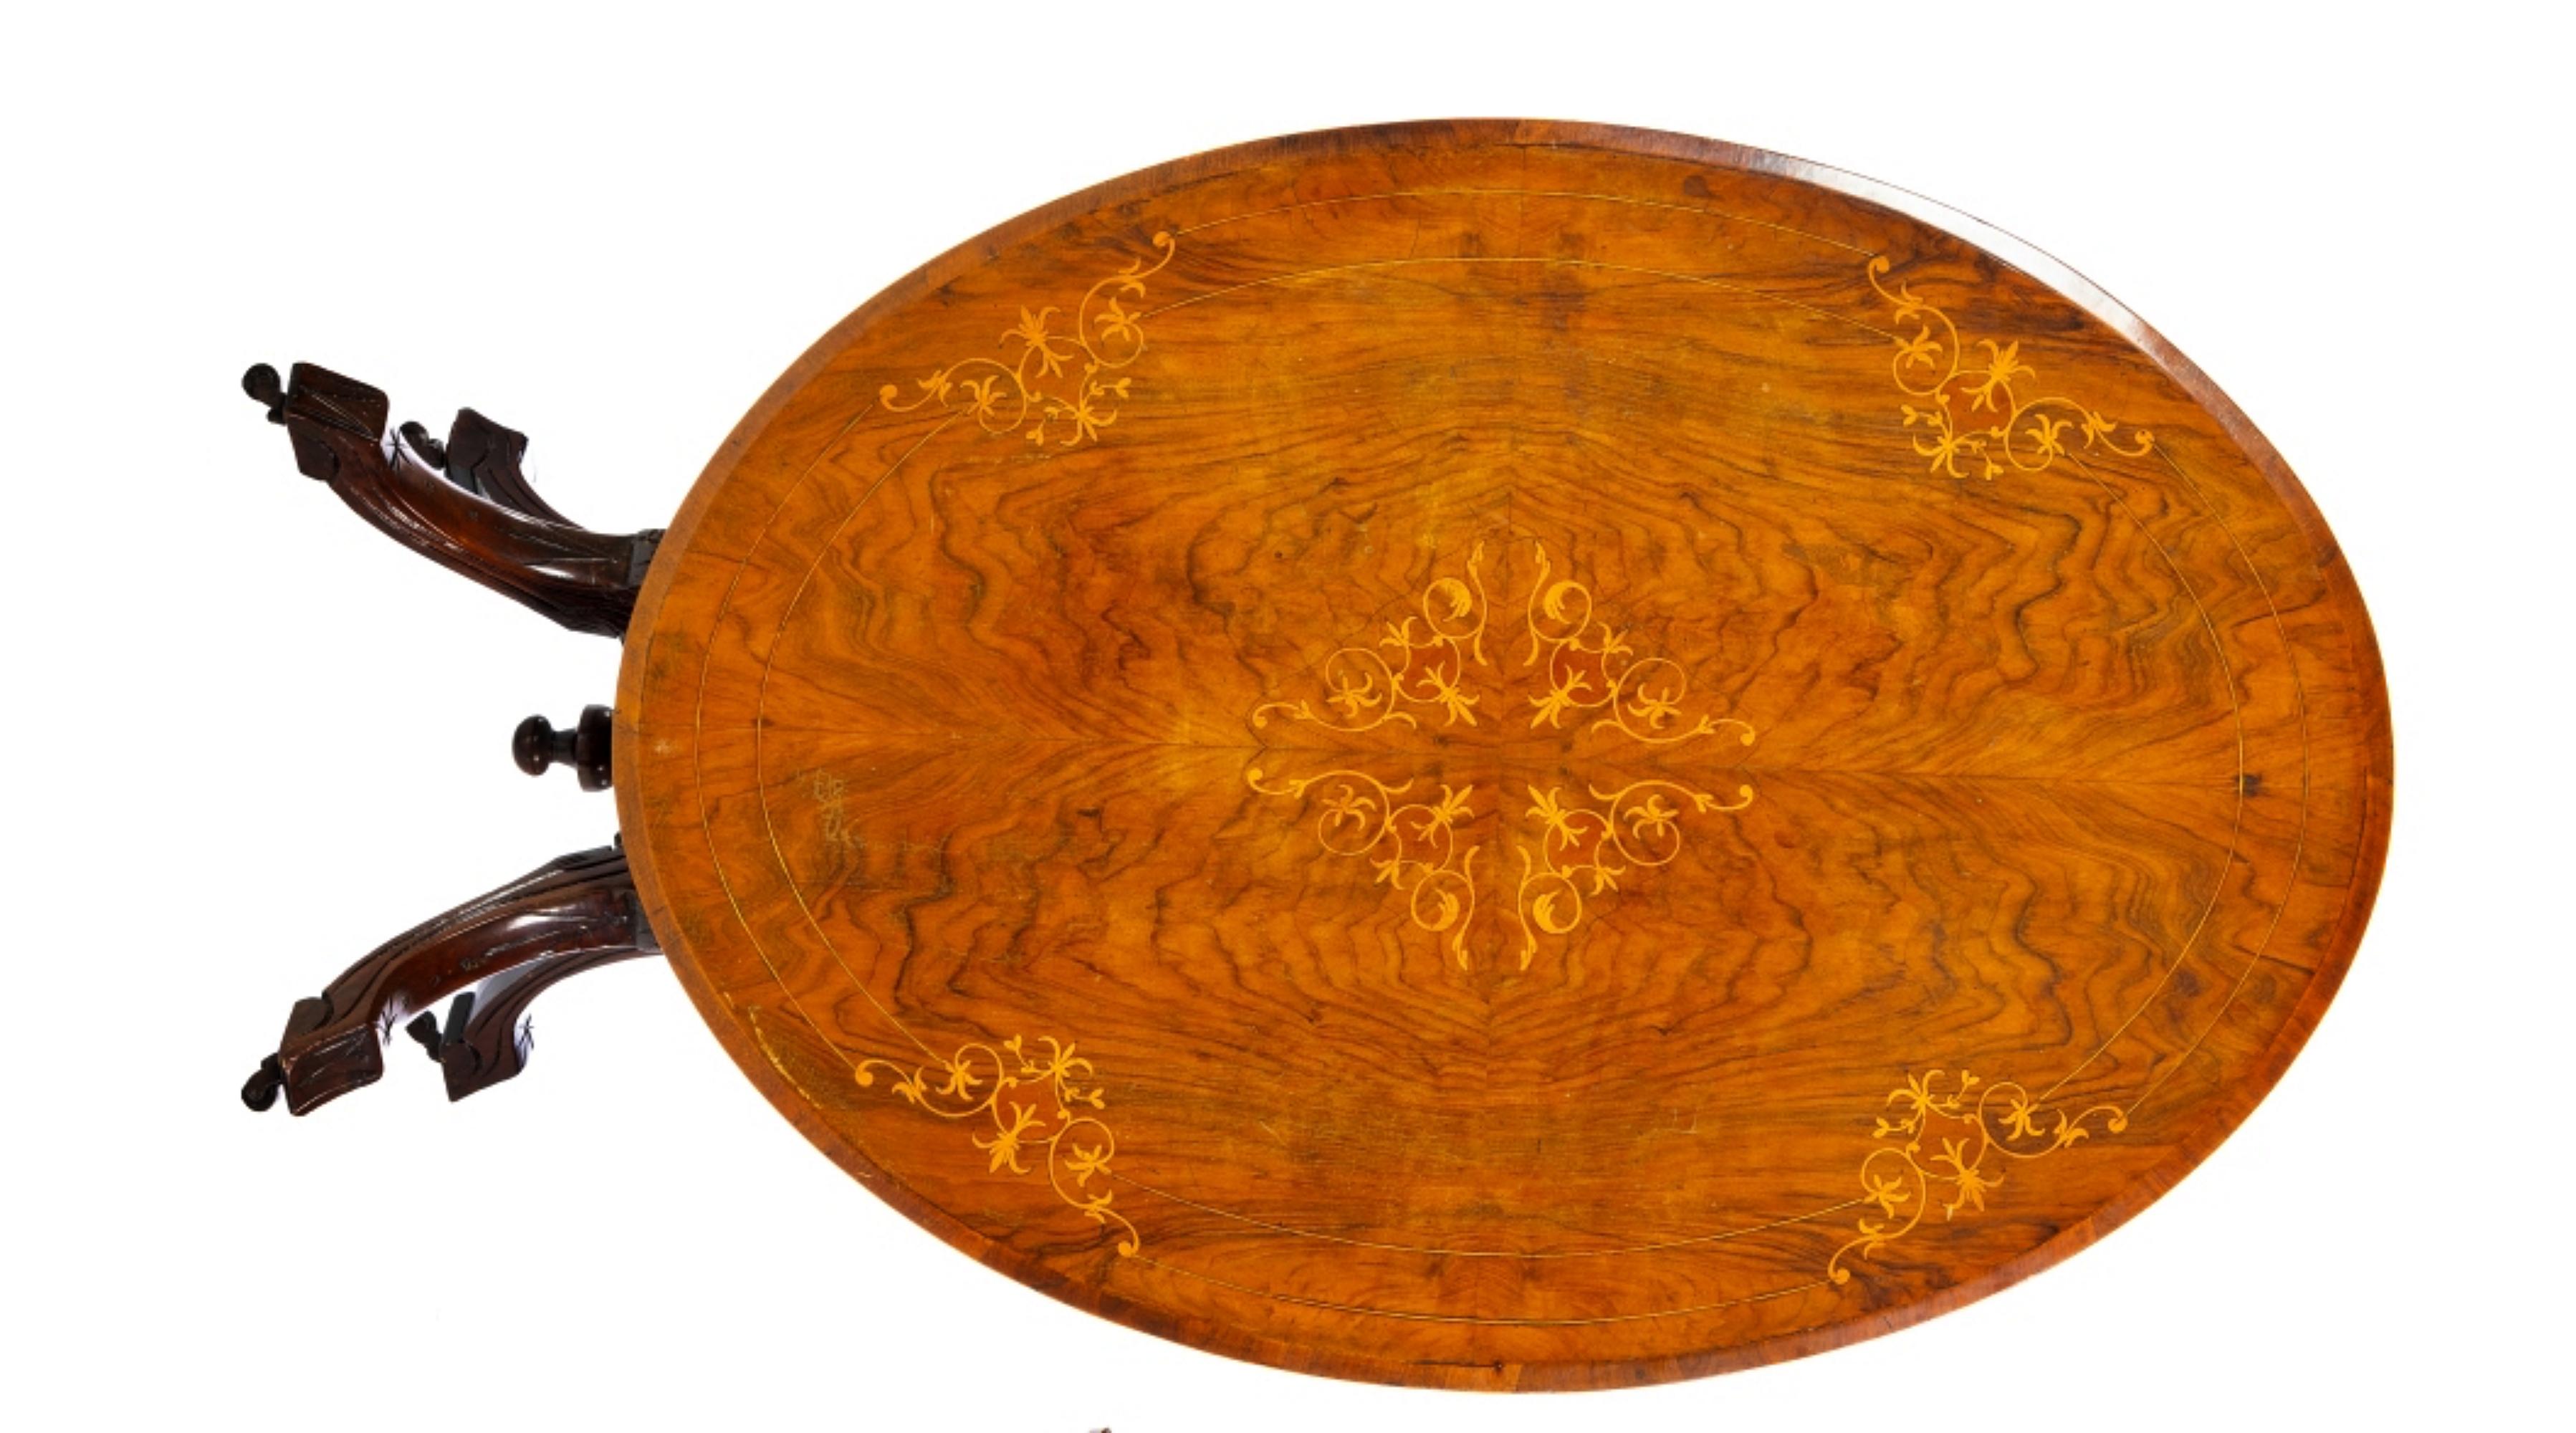 Schöner englischer Mitteltisch aus dem 19. Jahrhundert

Verkleidung aus Mahagoniholz und Mahagoniwurzel mit Intarsien.
Platte mit Intarsien verziert, mit Pflanzenmotiven, ruht auf vier gedrehten Säulen mit vier geschwungenen